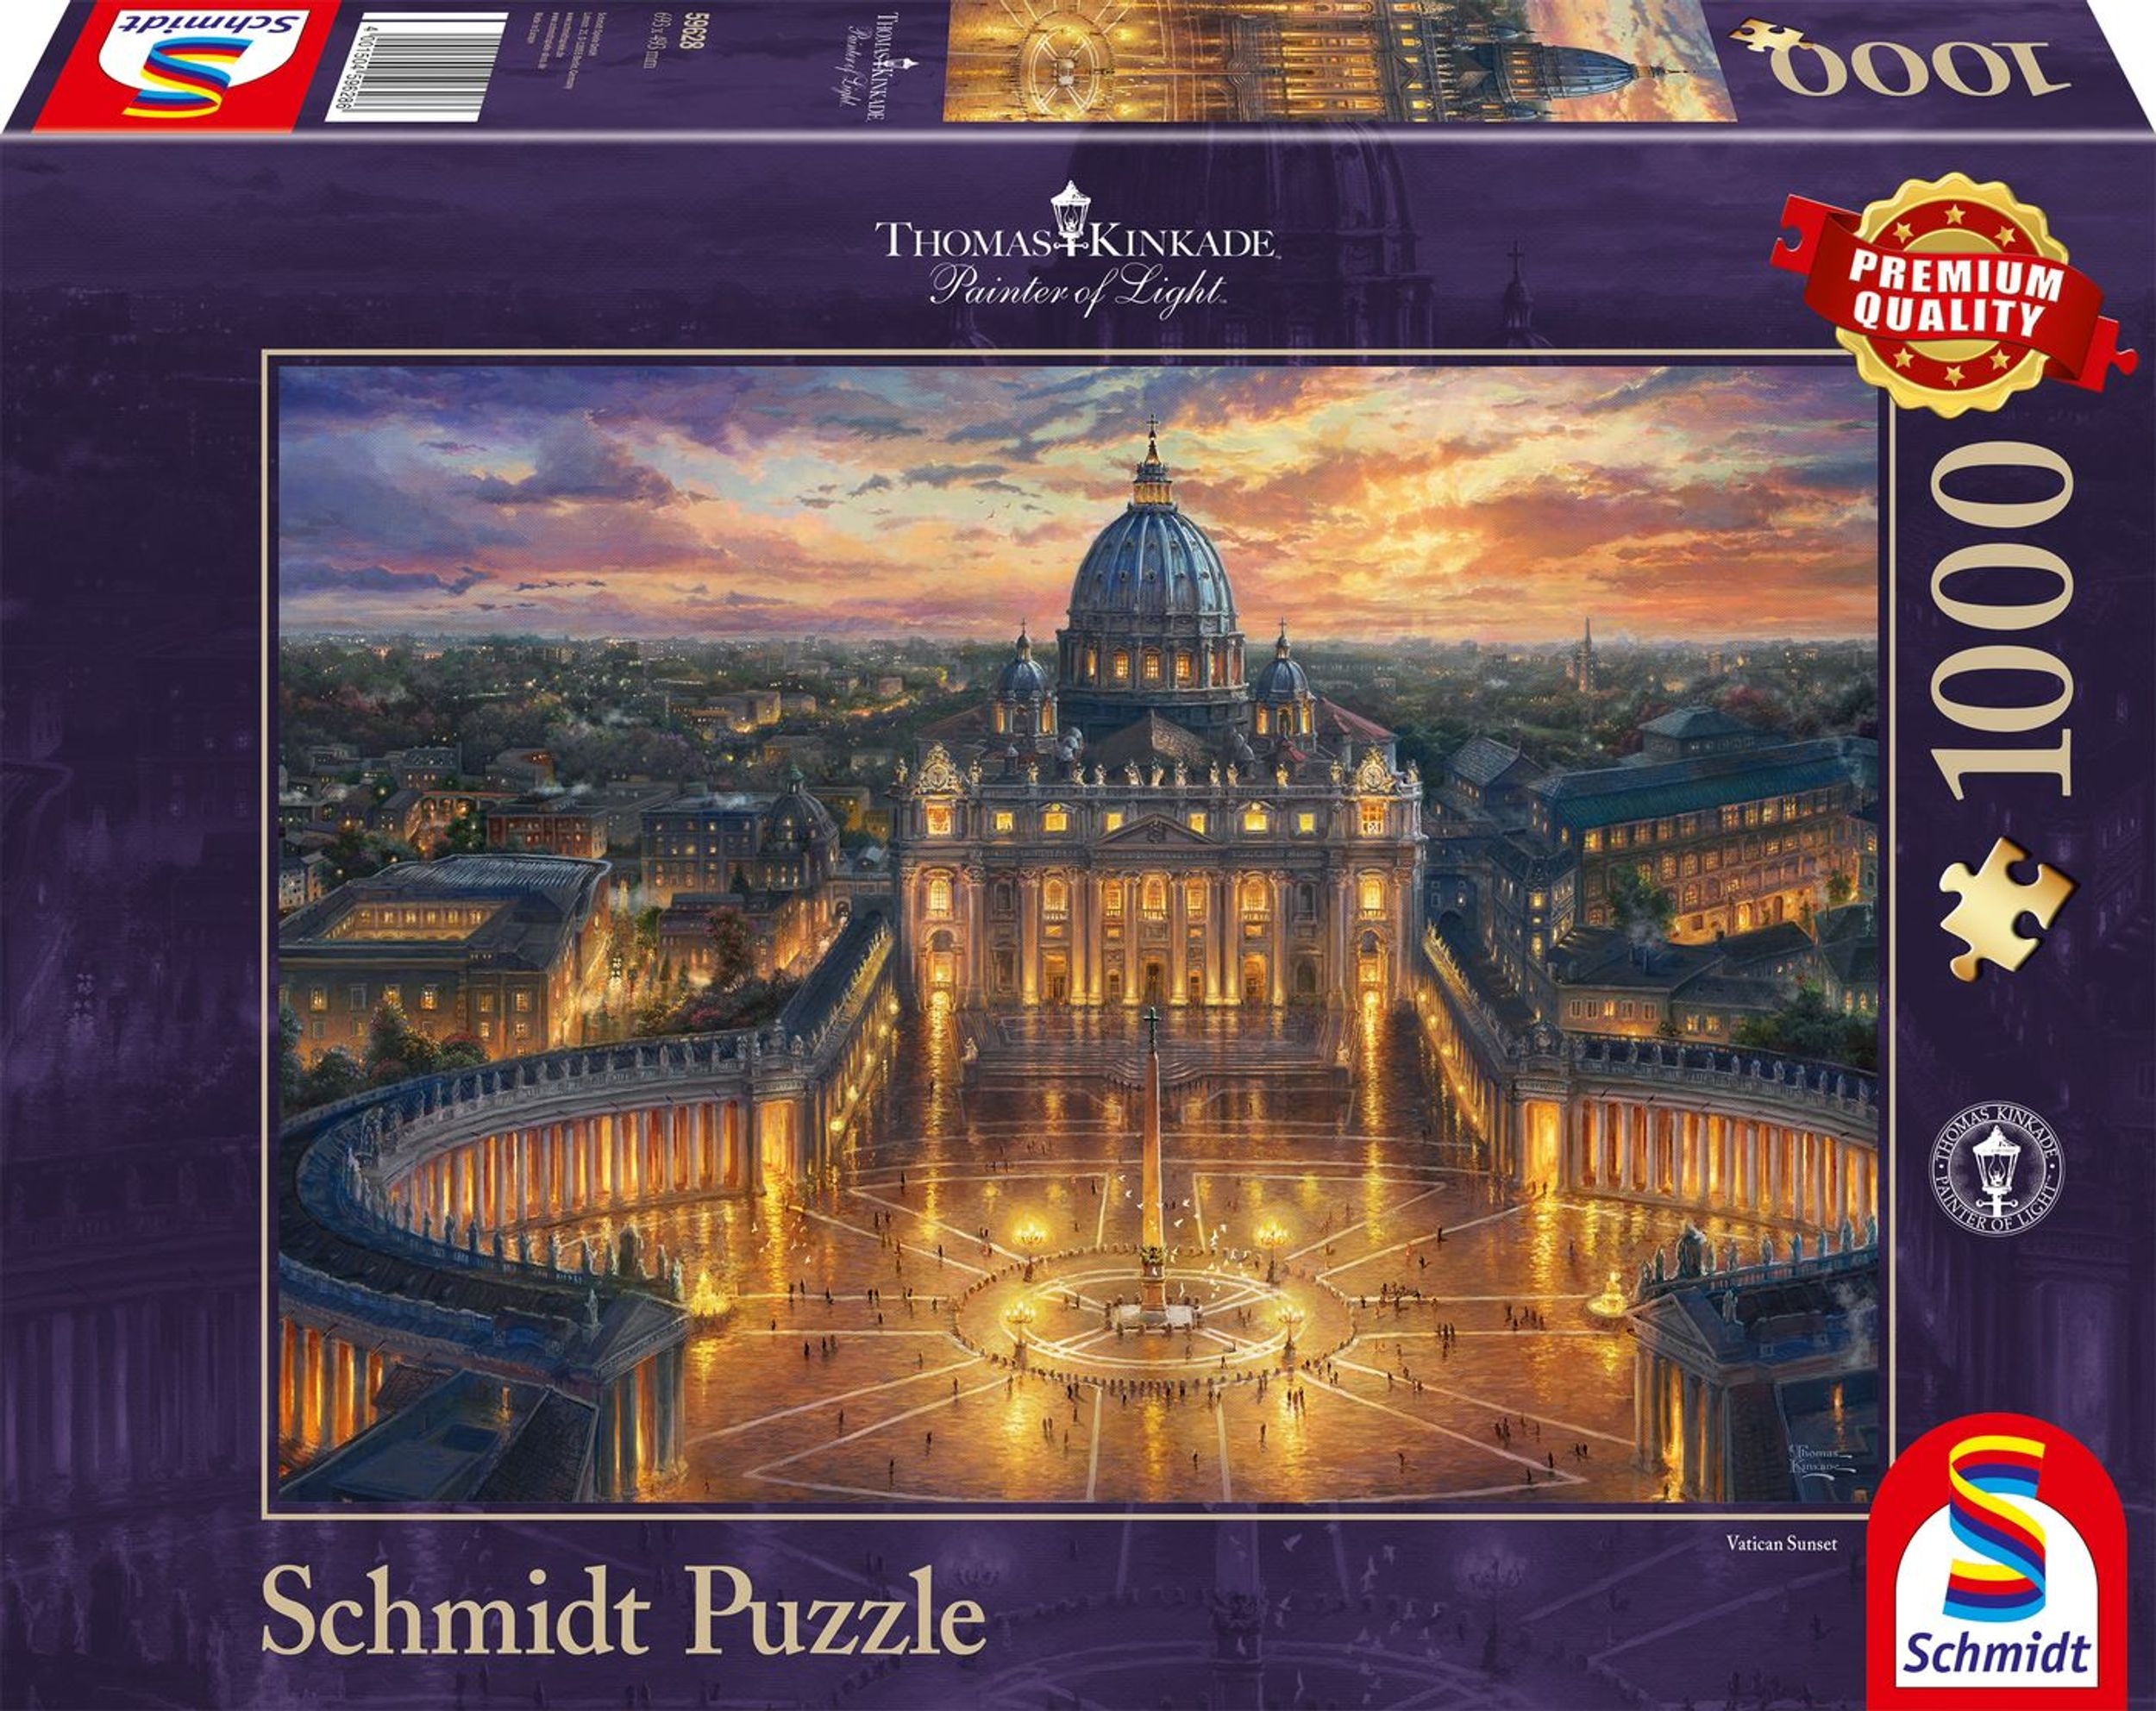 SCHMIDT Puzzle SPIELE Vatikan